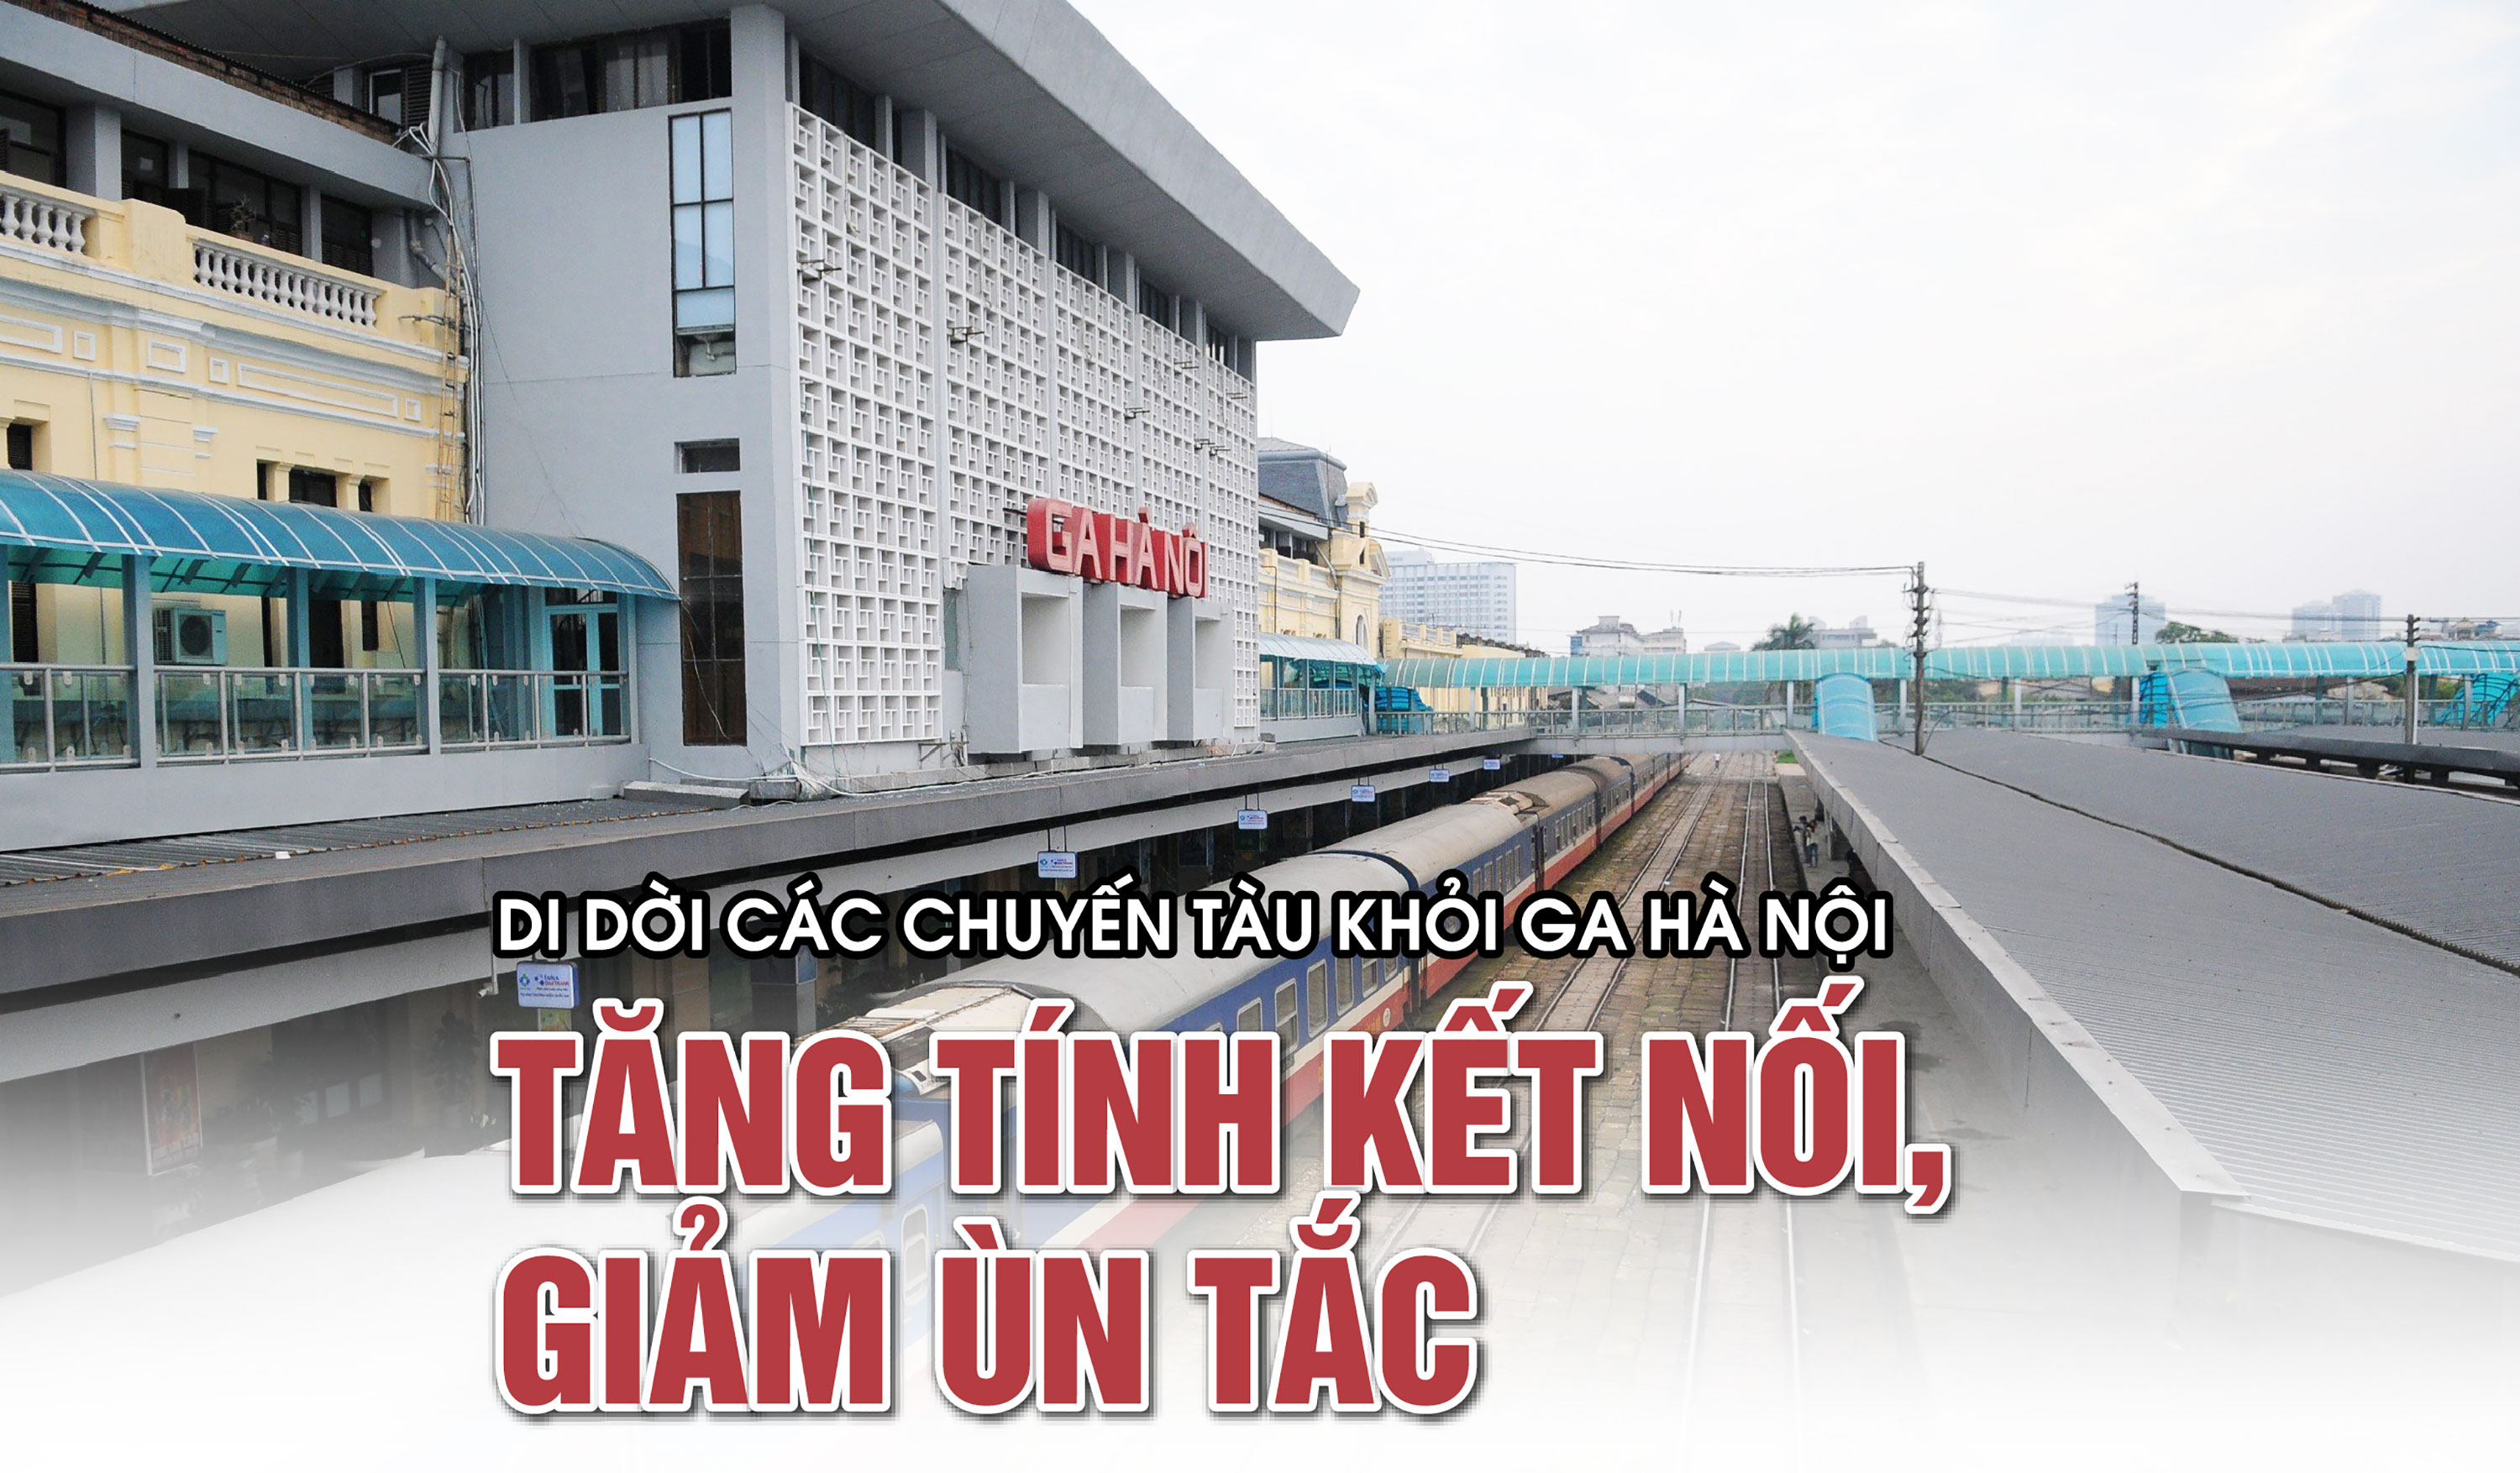 Di dời các chuyến tàu khỏi ga Hà Nội: tăng tính kết nối, giảm ùn tắc - Ảnh 1